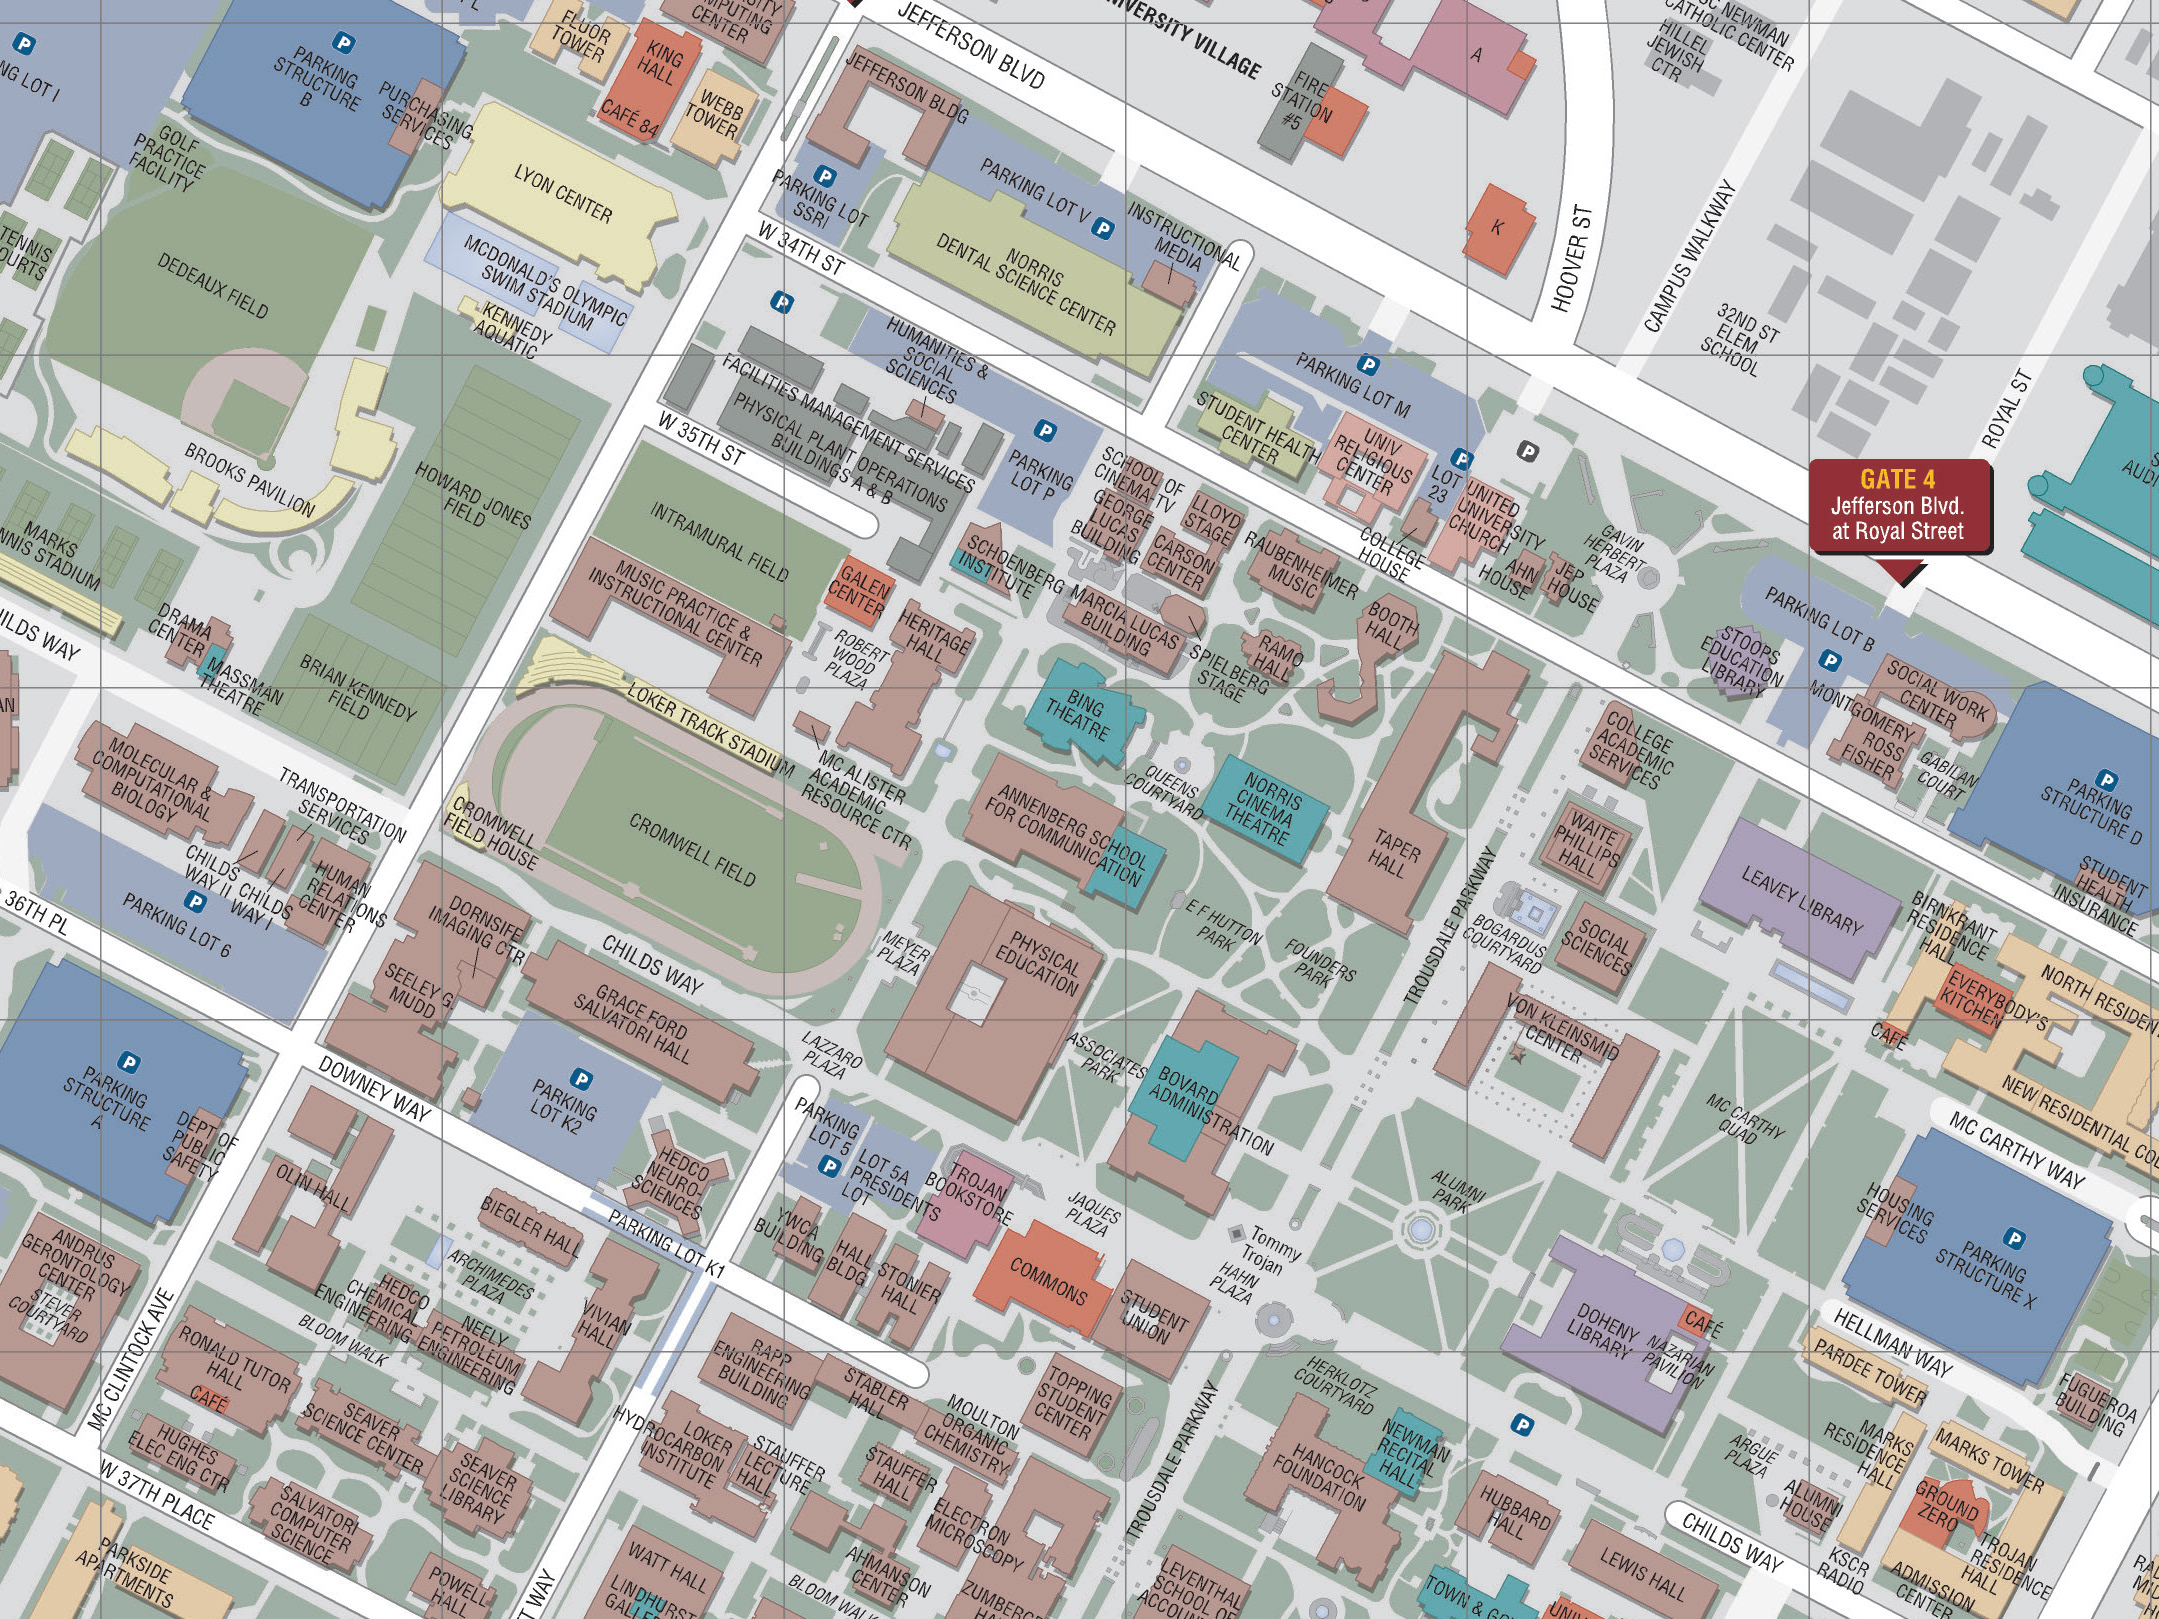 usc campus map